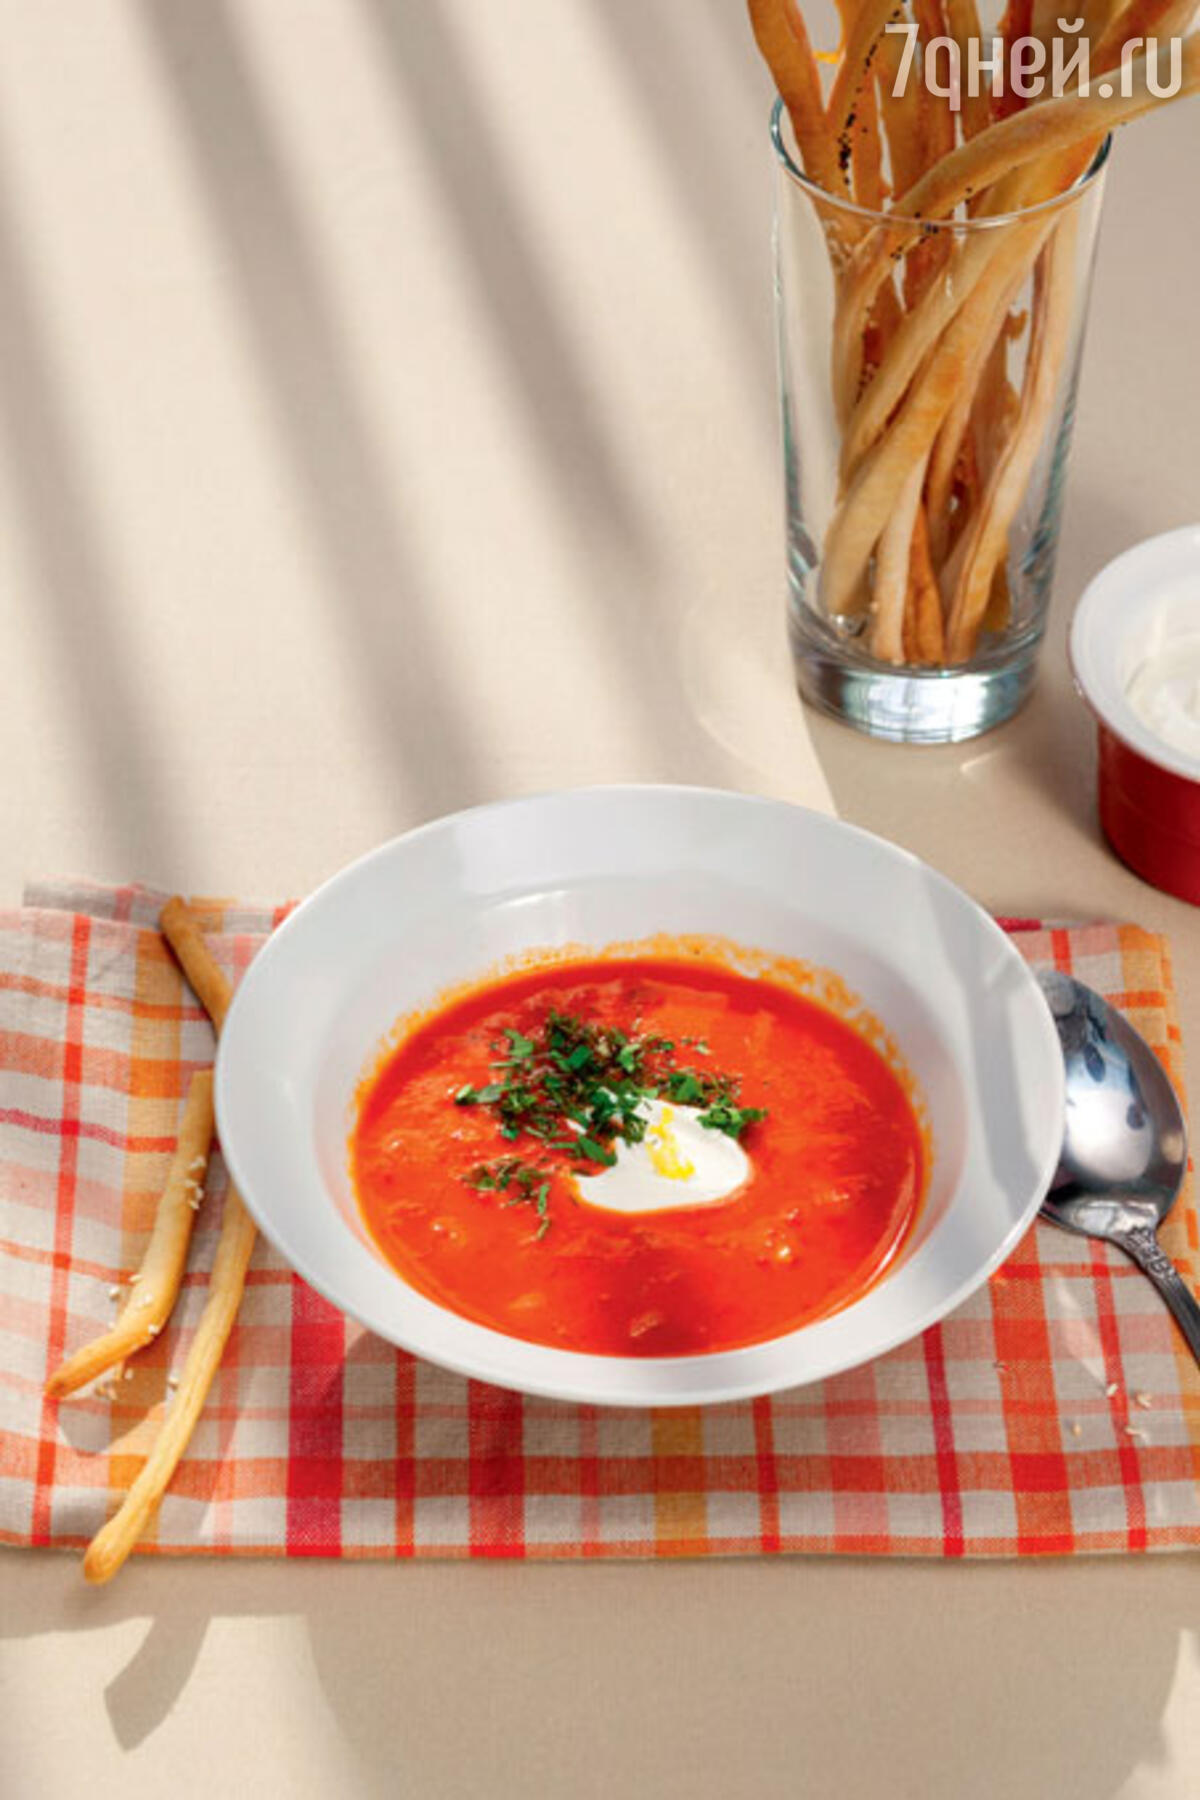 Рецепты супов от Юлии Высоцкой — тыквенный, куриный, гороховый, из чечевицы, грибной и другие